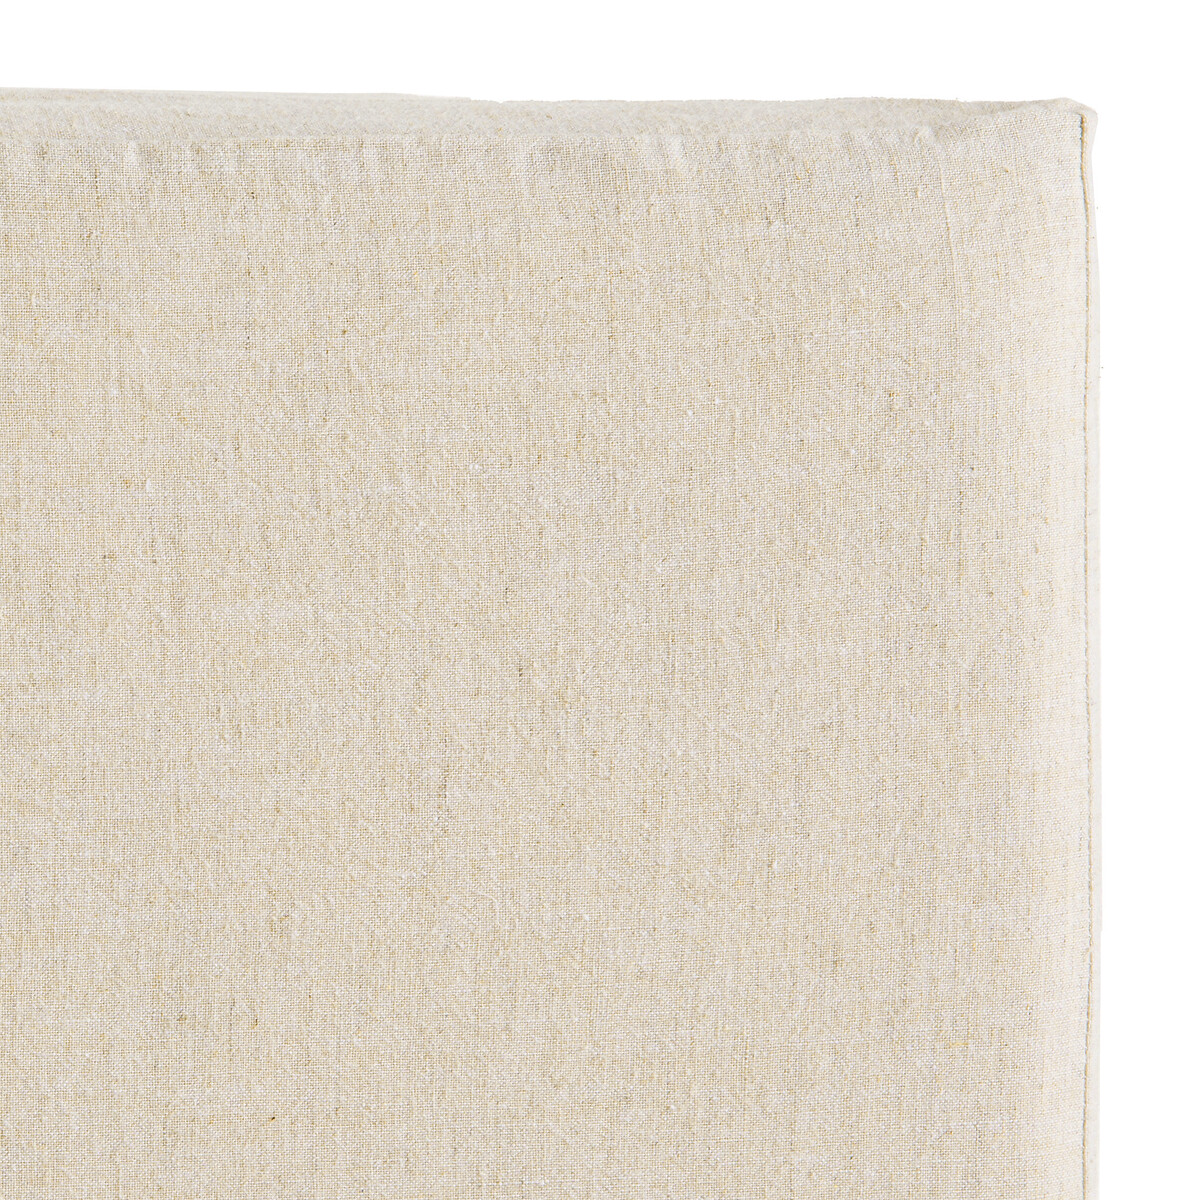 Чехол LaRedoute На кроватное изголовье из ткани шамбре Abella 90 x 85 см бежевый, размер 90 x 85 см - фото 2